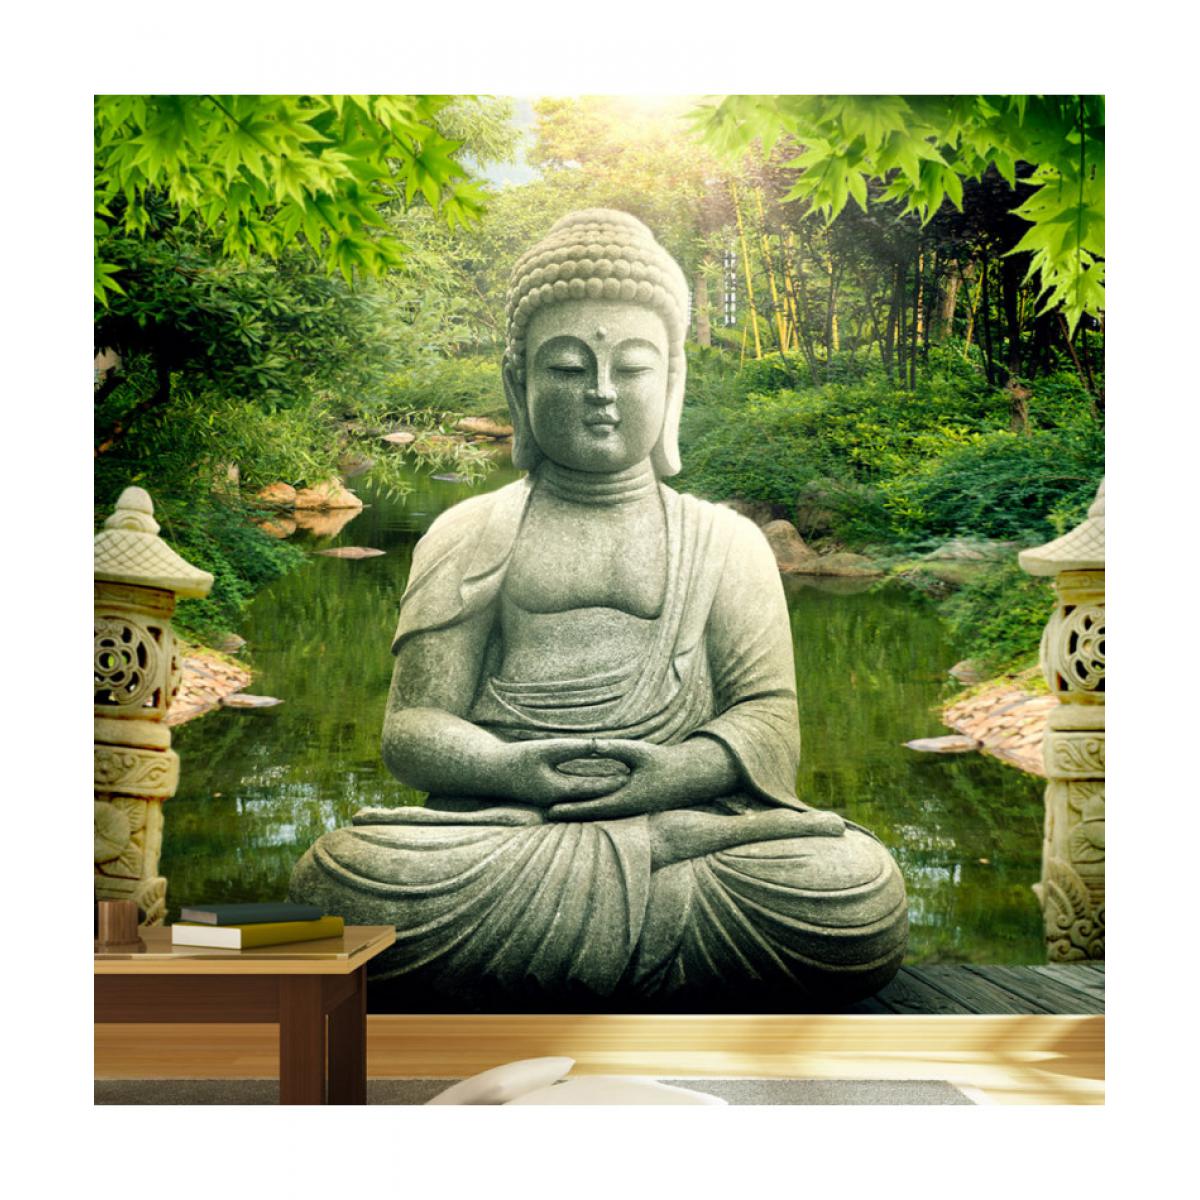 Artgeist - Papier peint - Buddha's garden 100x70 - Papier peint